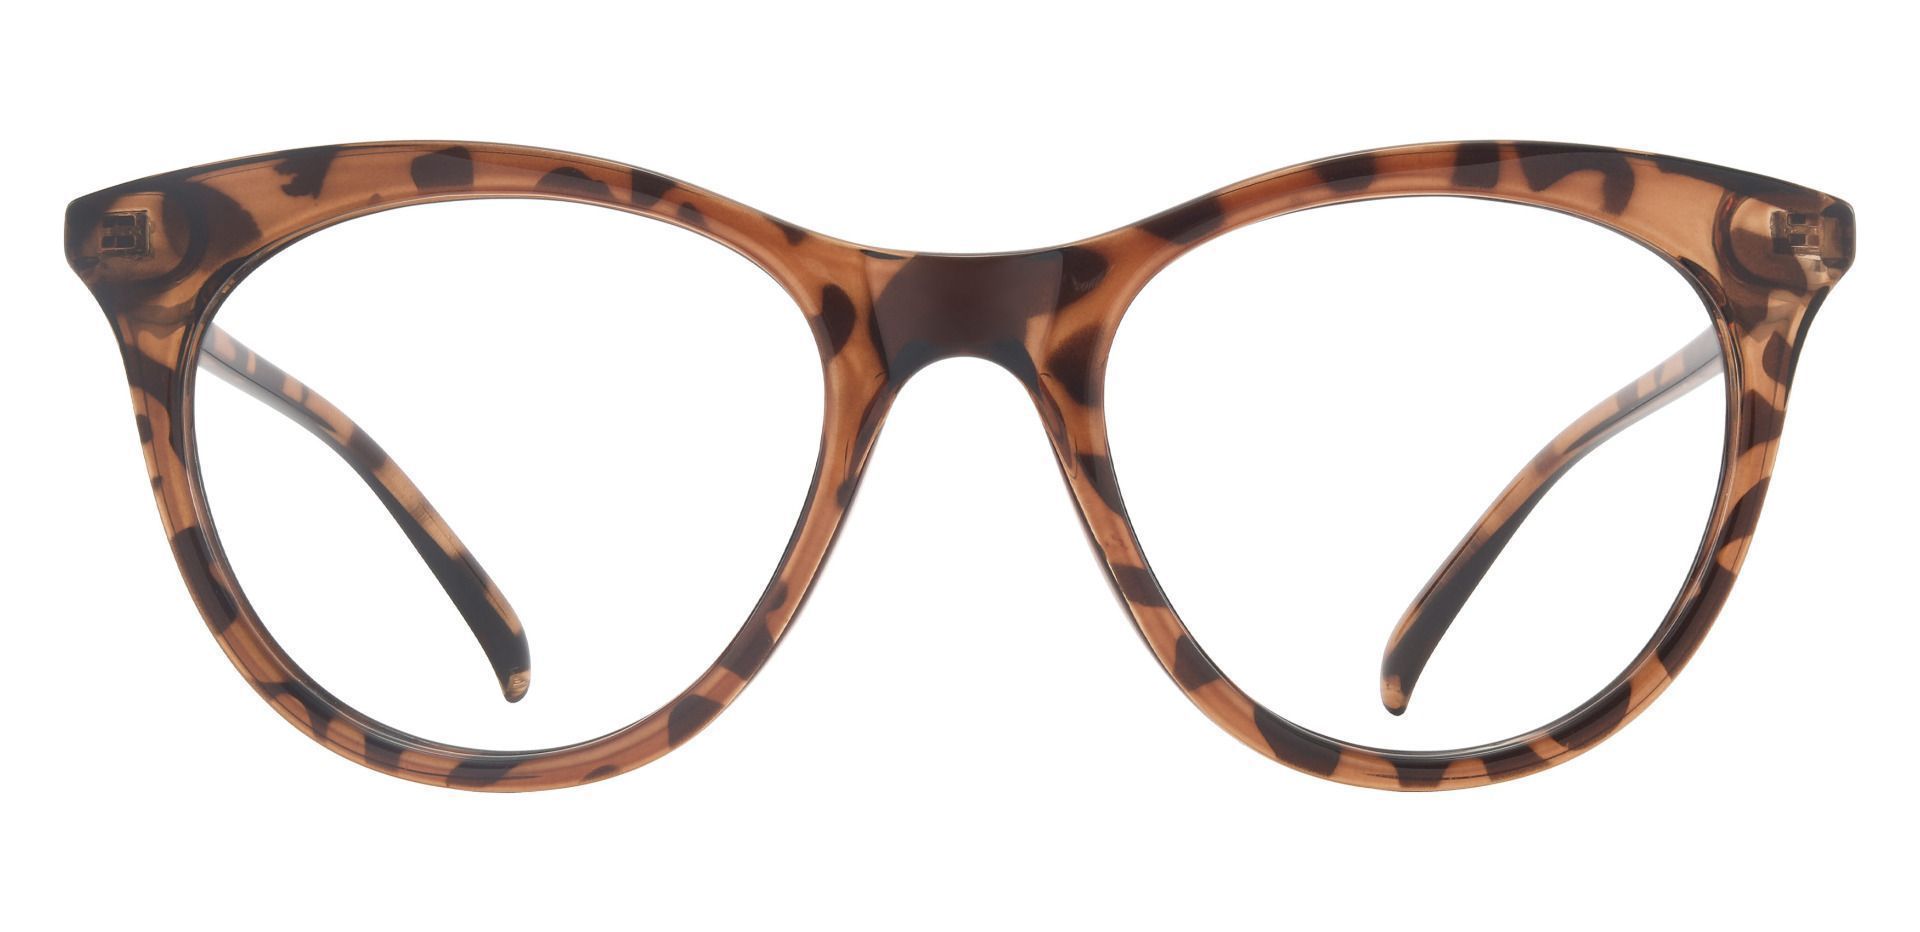 Valencia Cat Eye Prescription Glasses - Brown